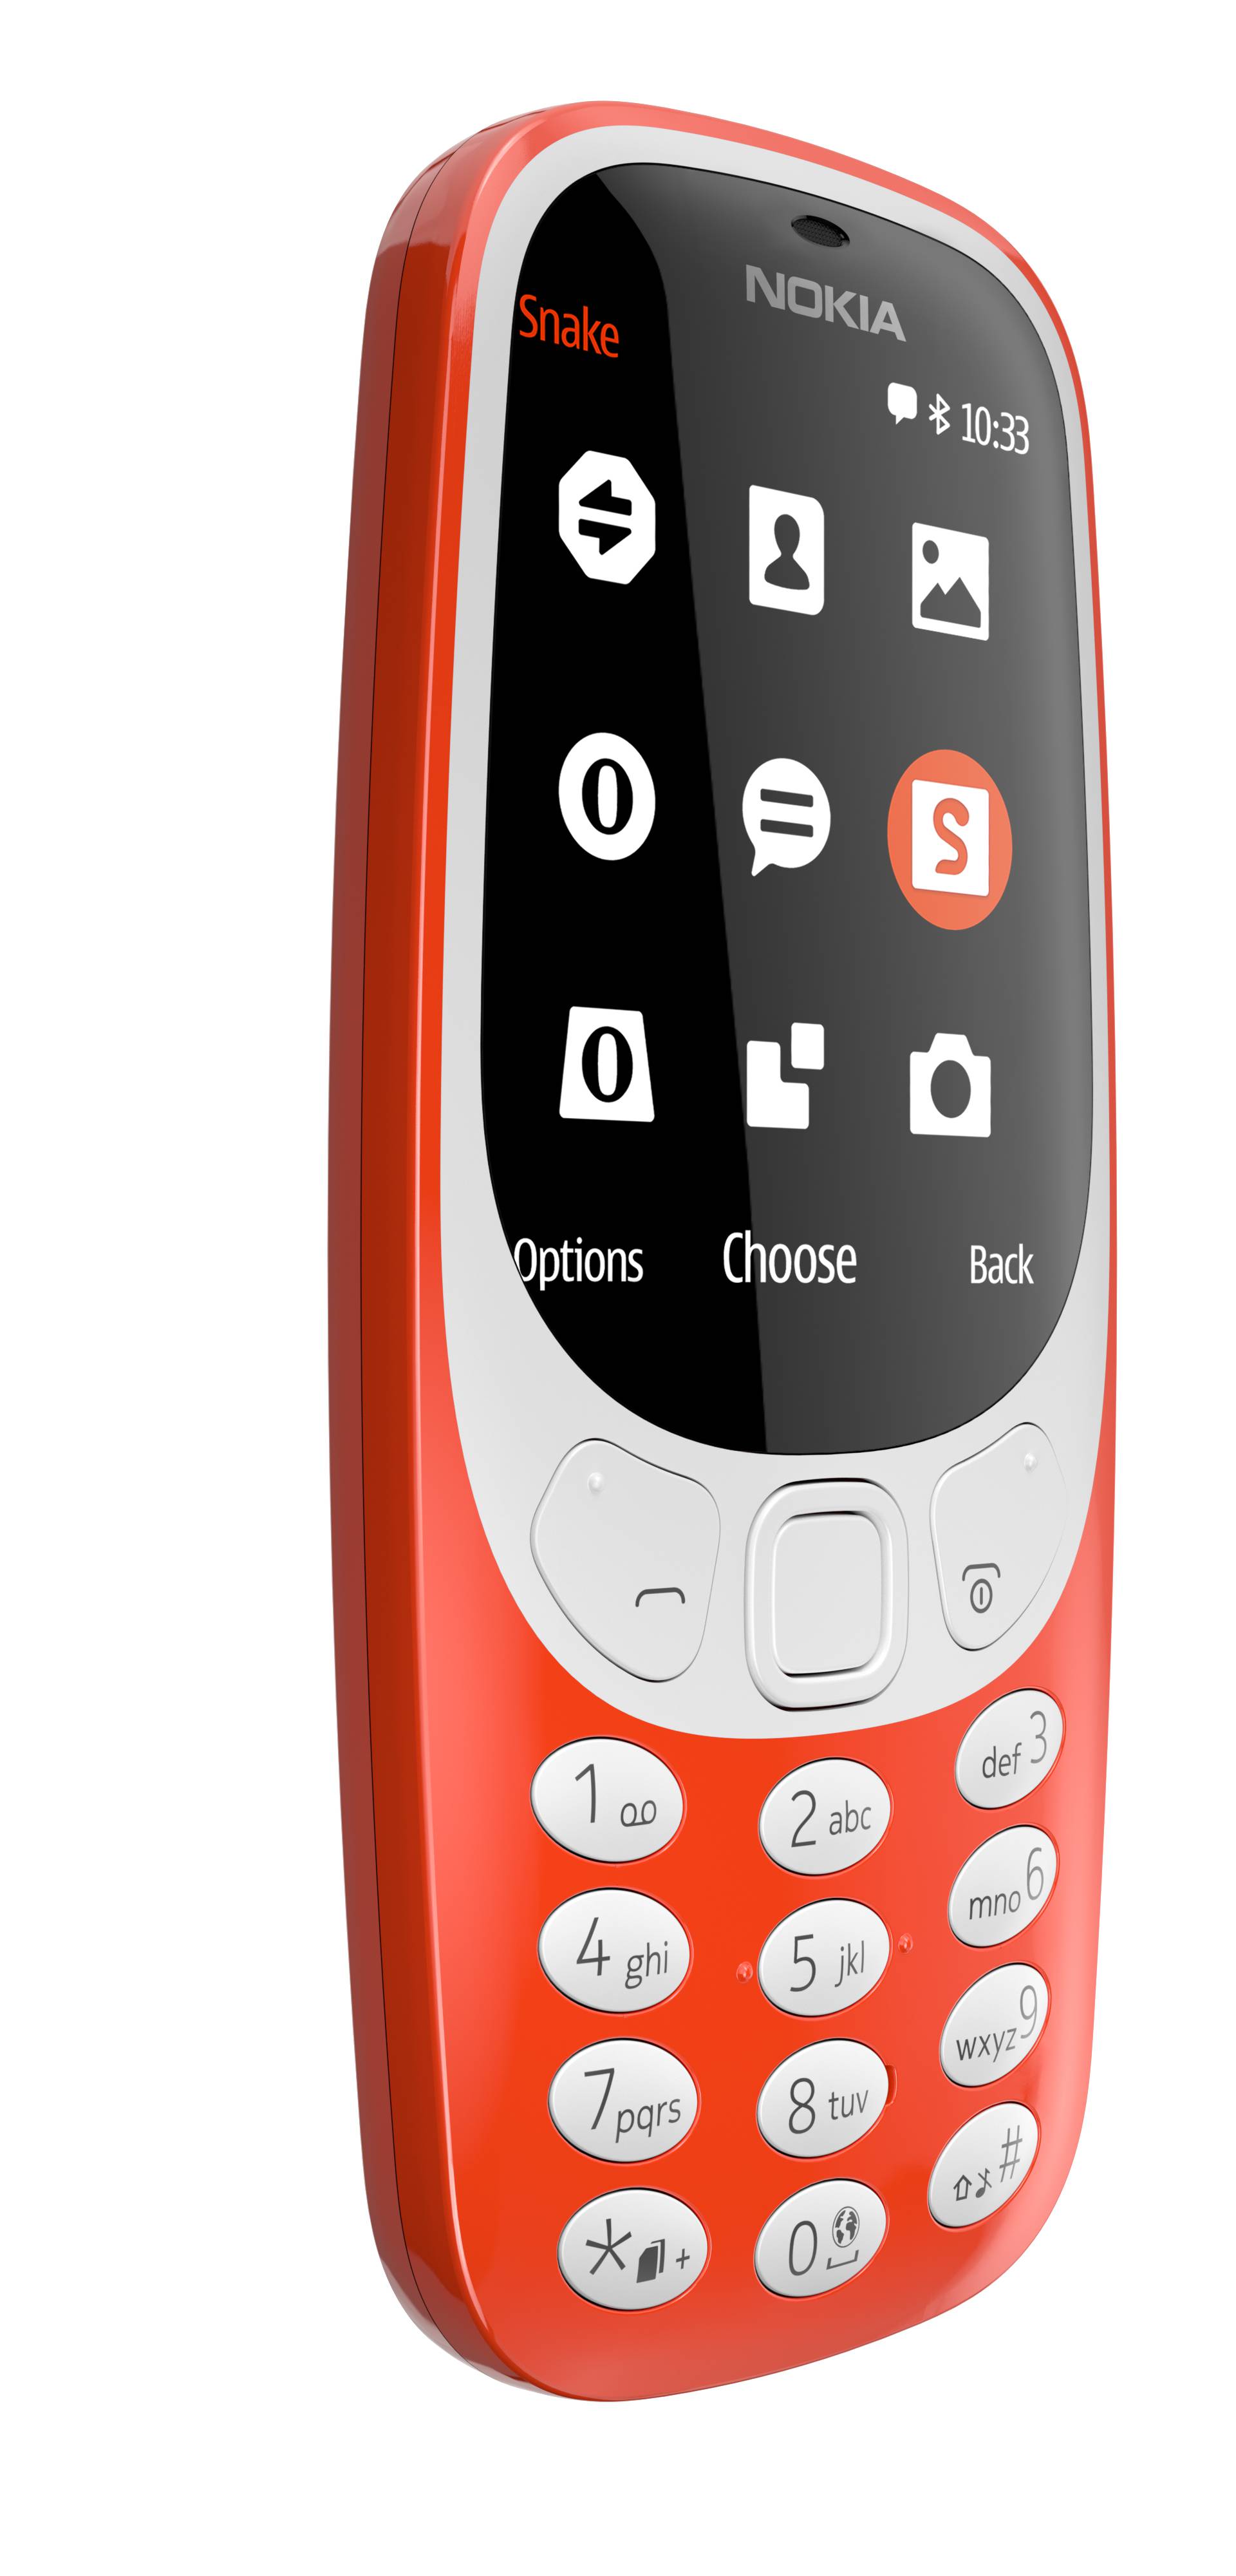 Retro Nokia 3310 u Hrvatskoj do kraja svibnja, zna se i cijena